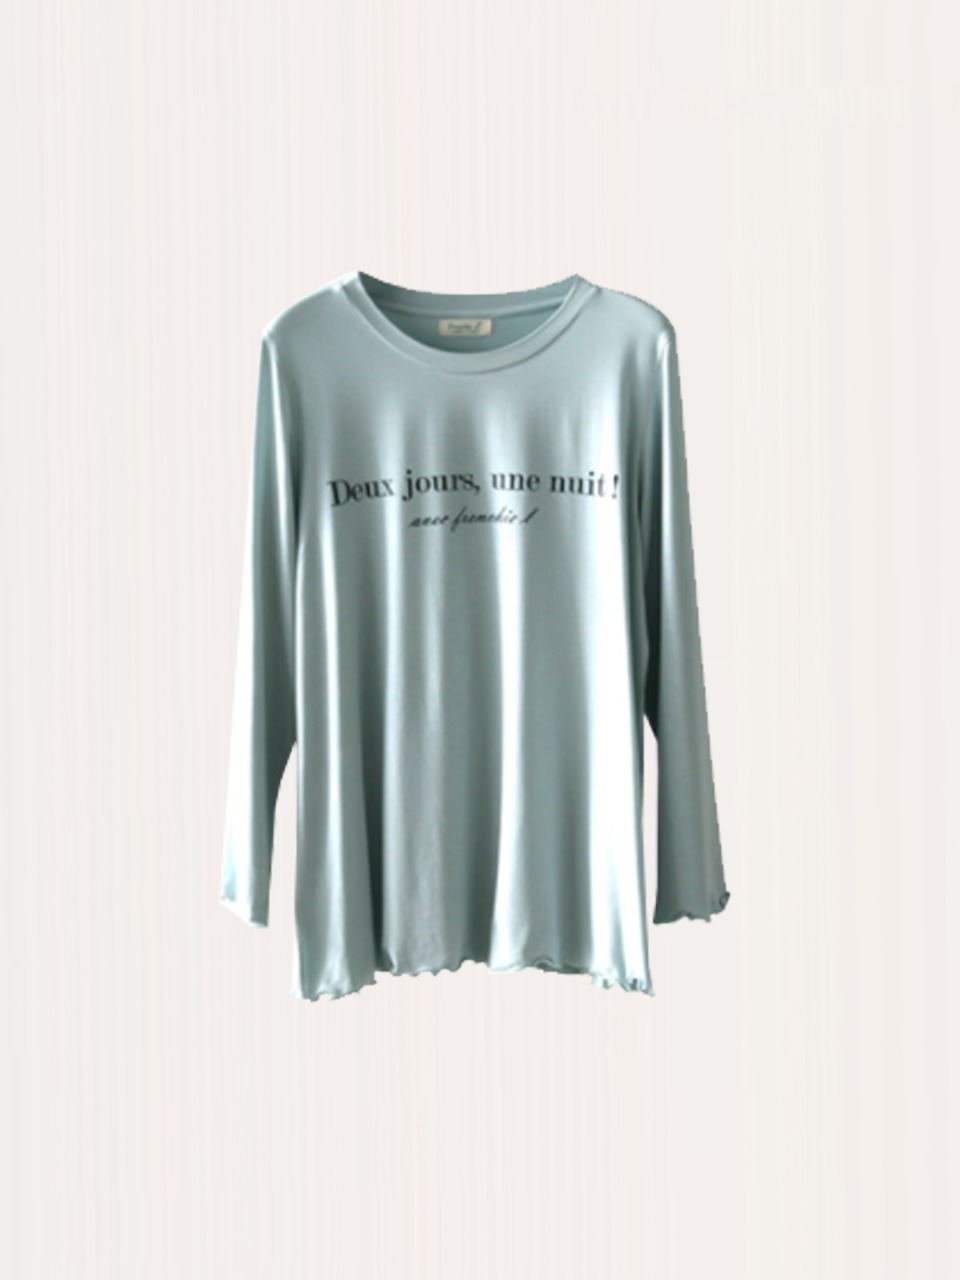 원포인트 모달 긴팔 티셔츠 - Mint blue